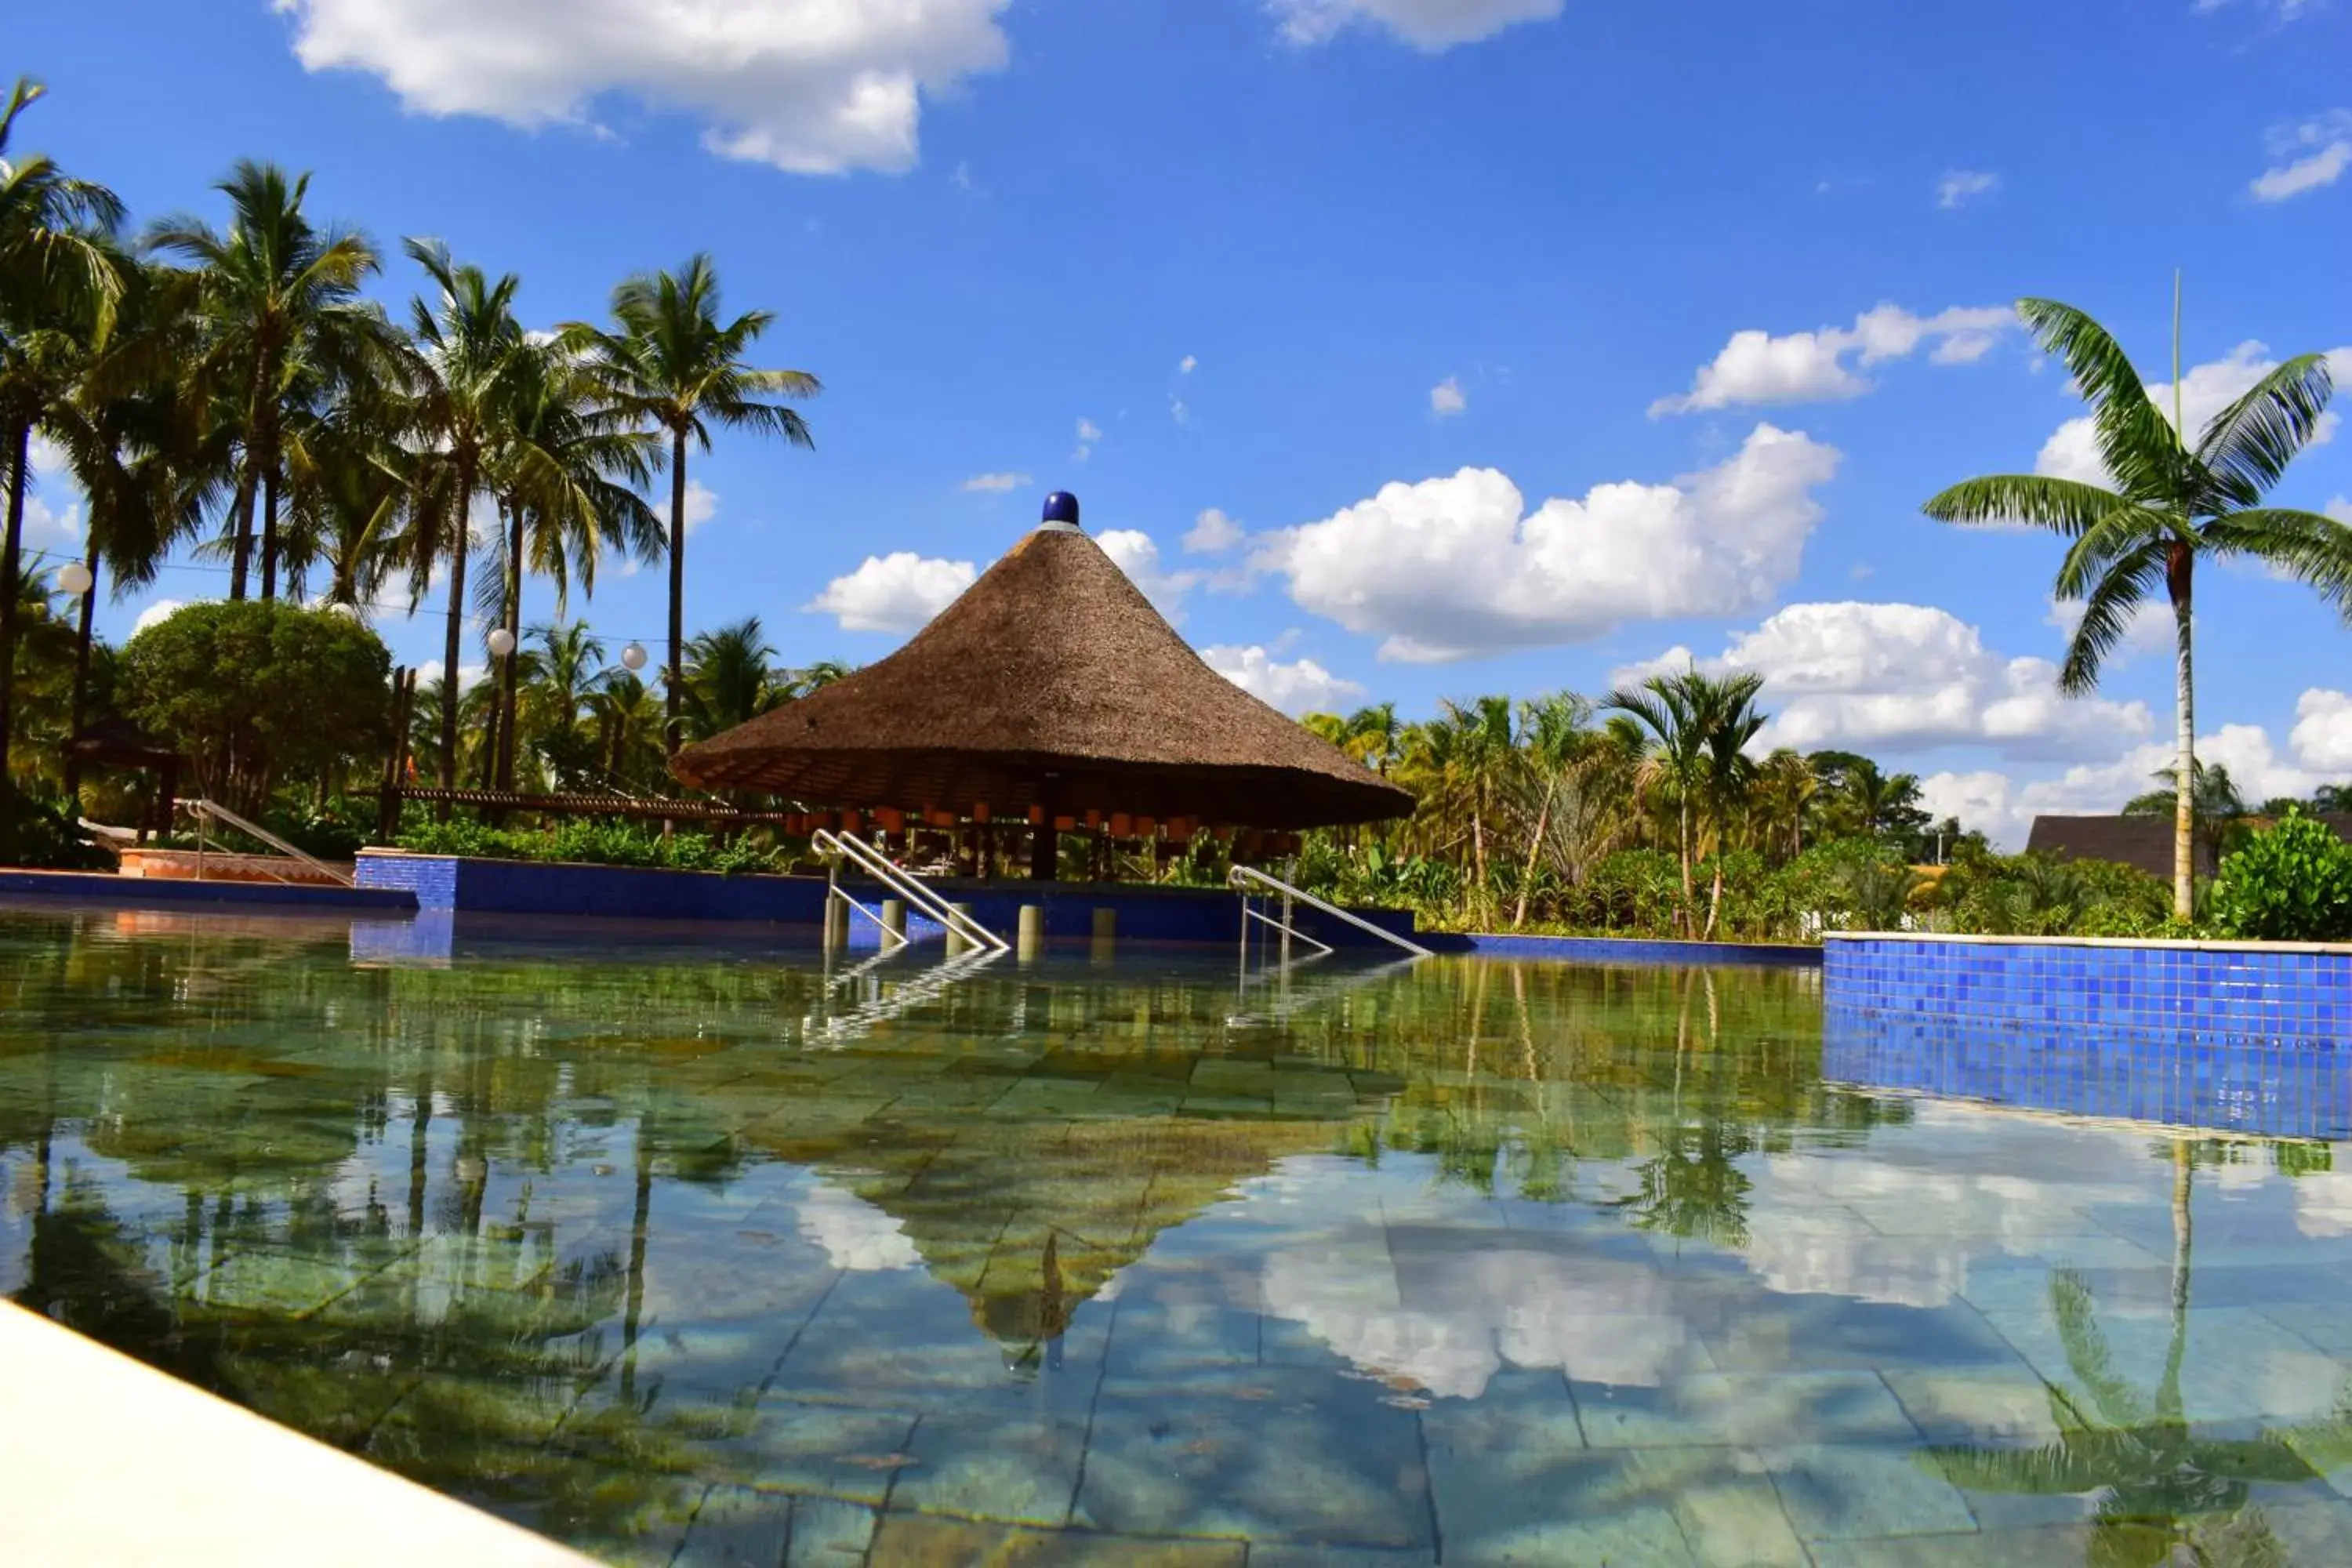 Aqua park, Swimming Pool in Hot Beach Resort